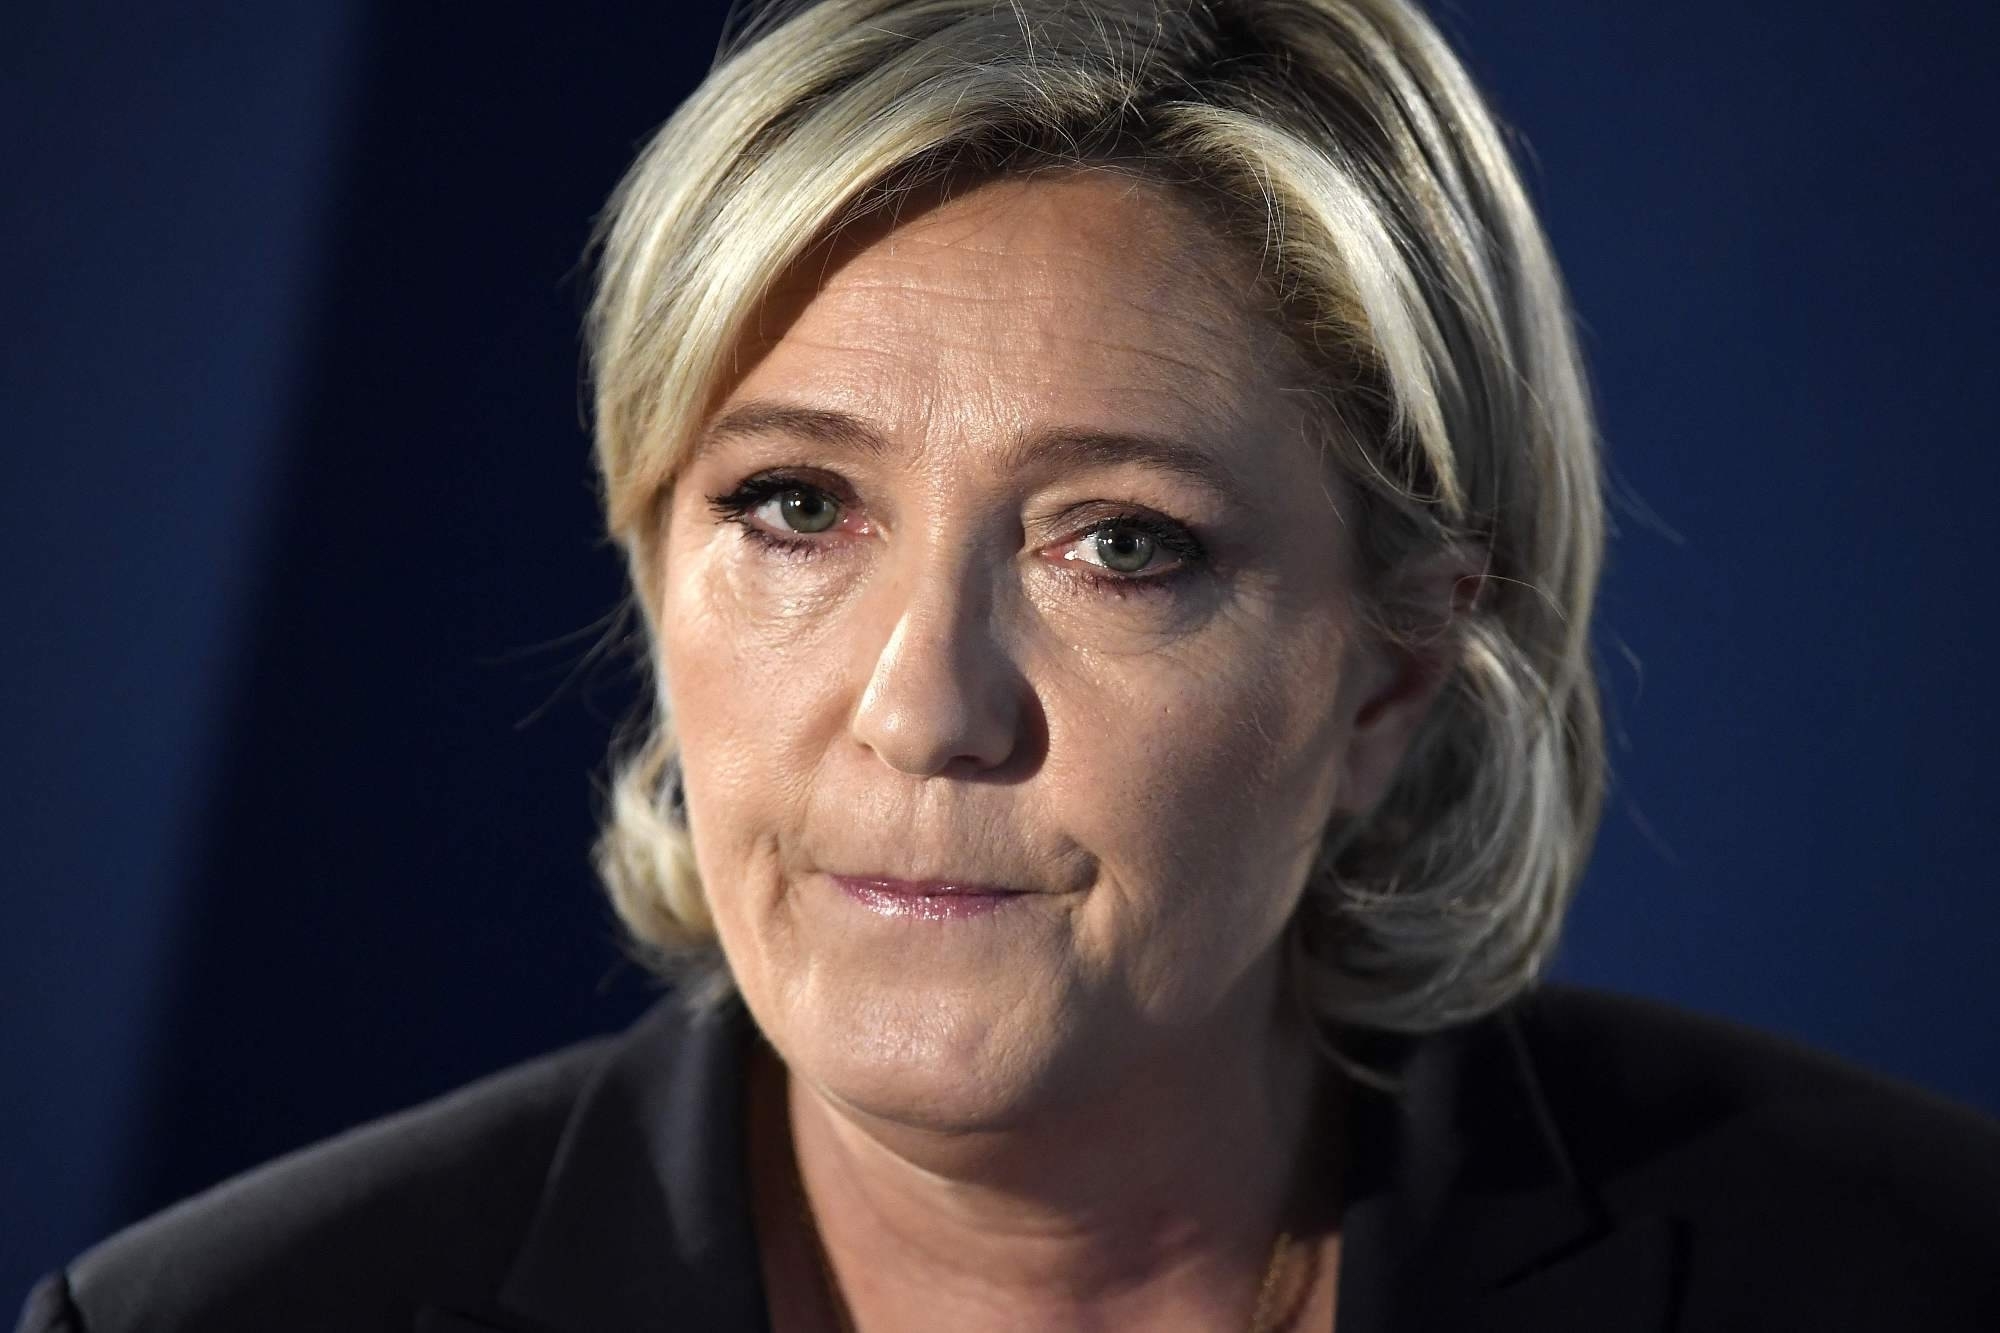 Marine Le Pen kimdir? Marine Le Pen'in hayat hikayesi - Yeni Şafak